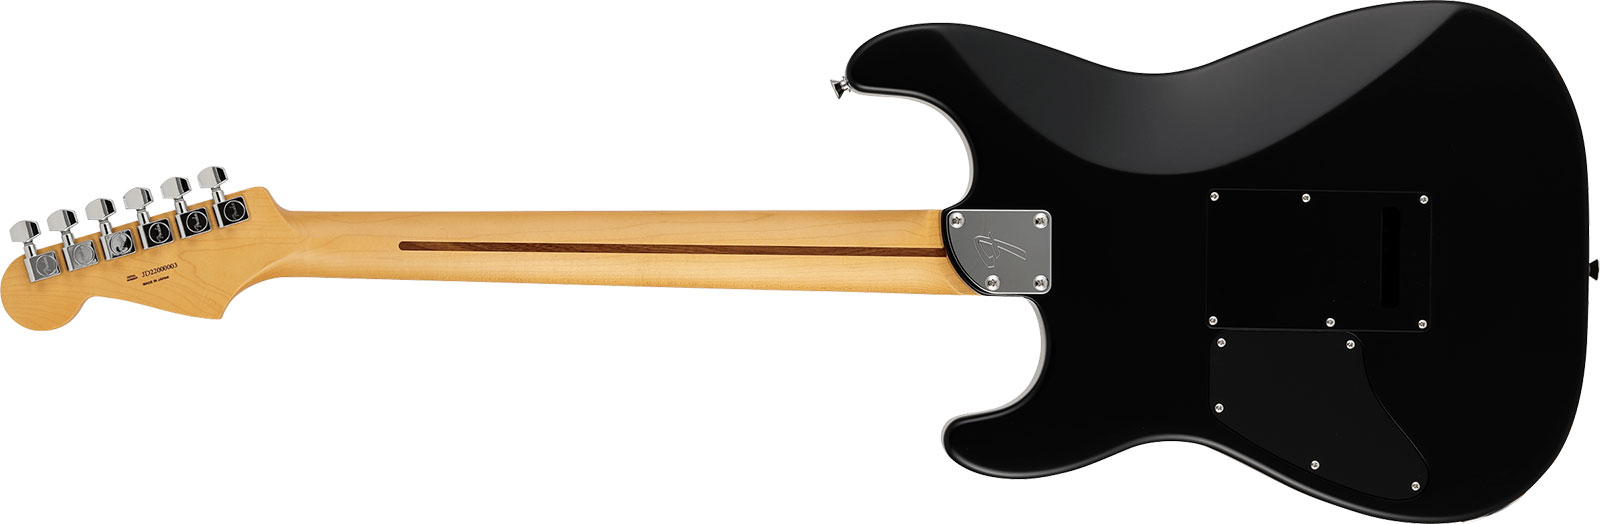 Fender Strat Elemental Mij Jap 2h Trem Rw - Stone Black - E-Gitarre in Str-Form - Variation 1